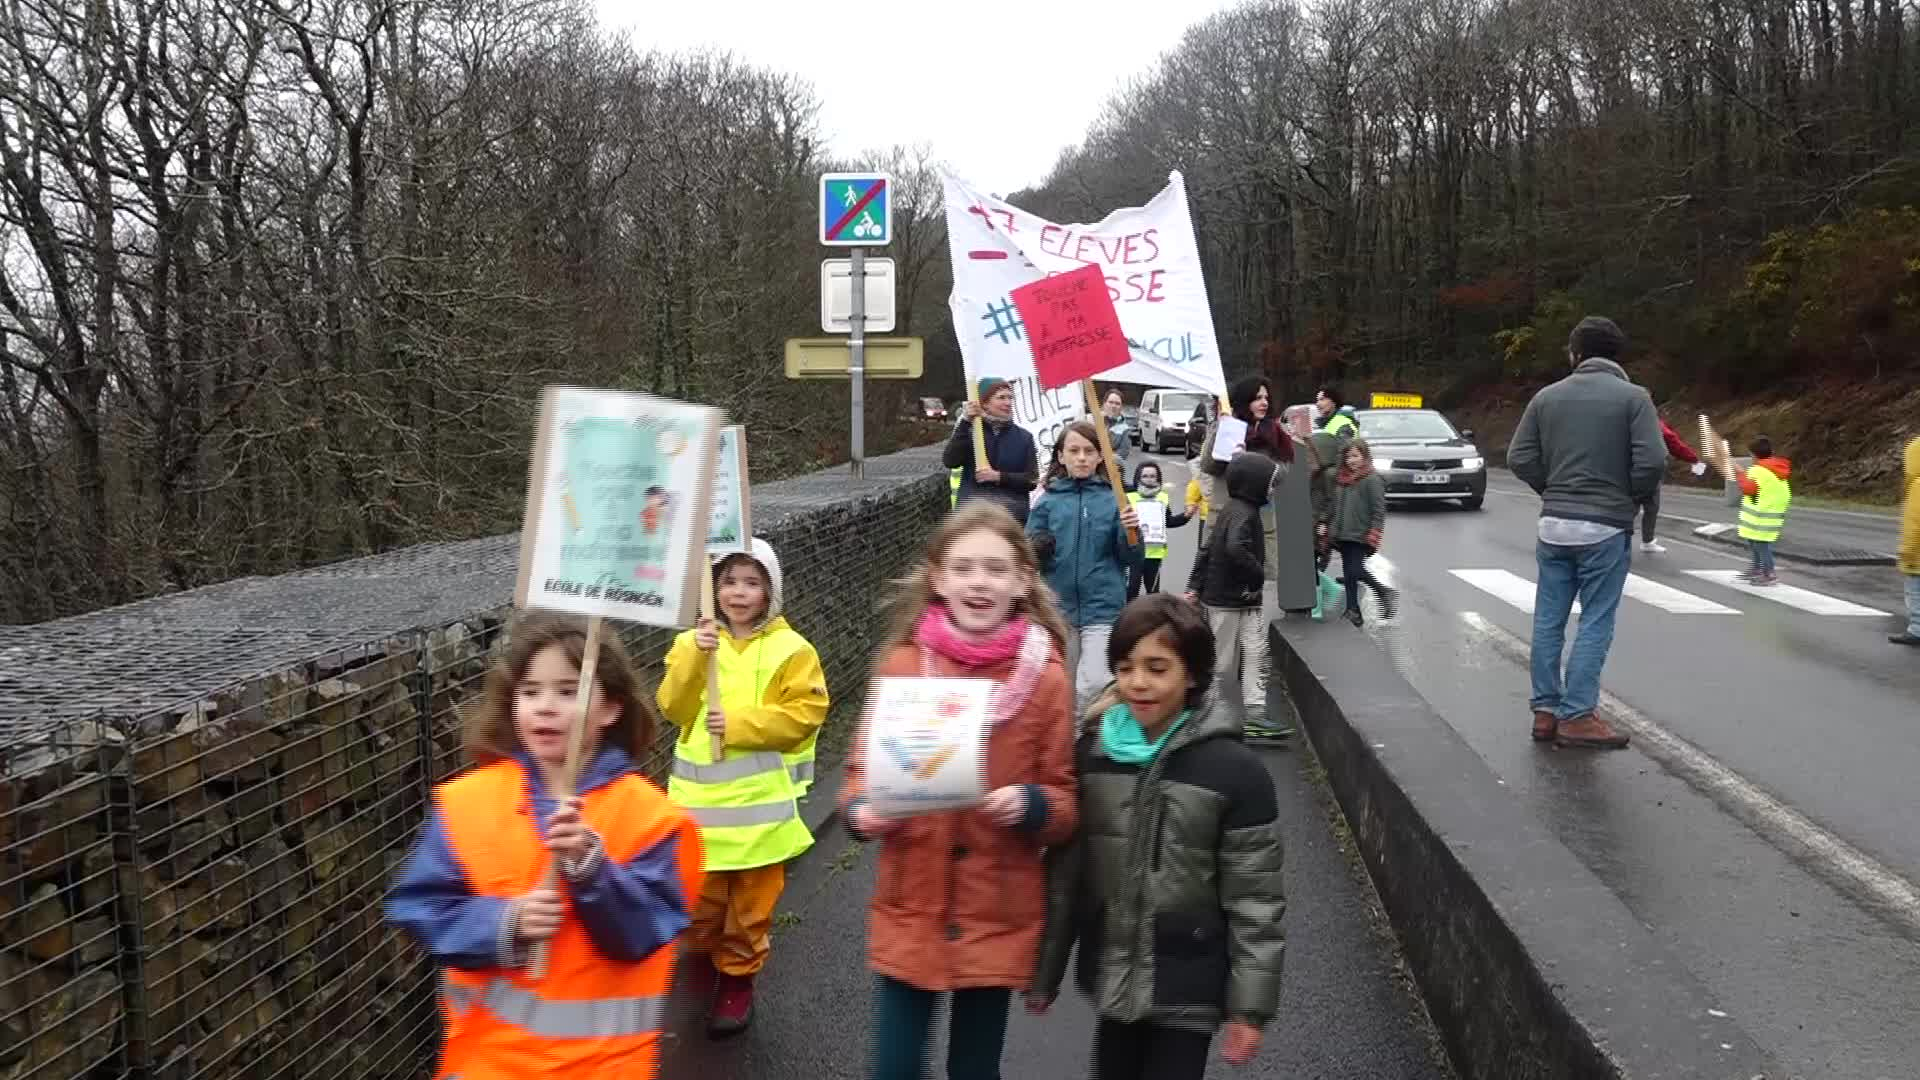 Les habitants de Rosnoën manifestent au pont de Térénez contre la fermeture de classe de l'école du Roz (Tébéo-TébéSud)